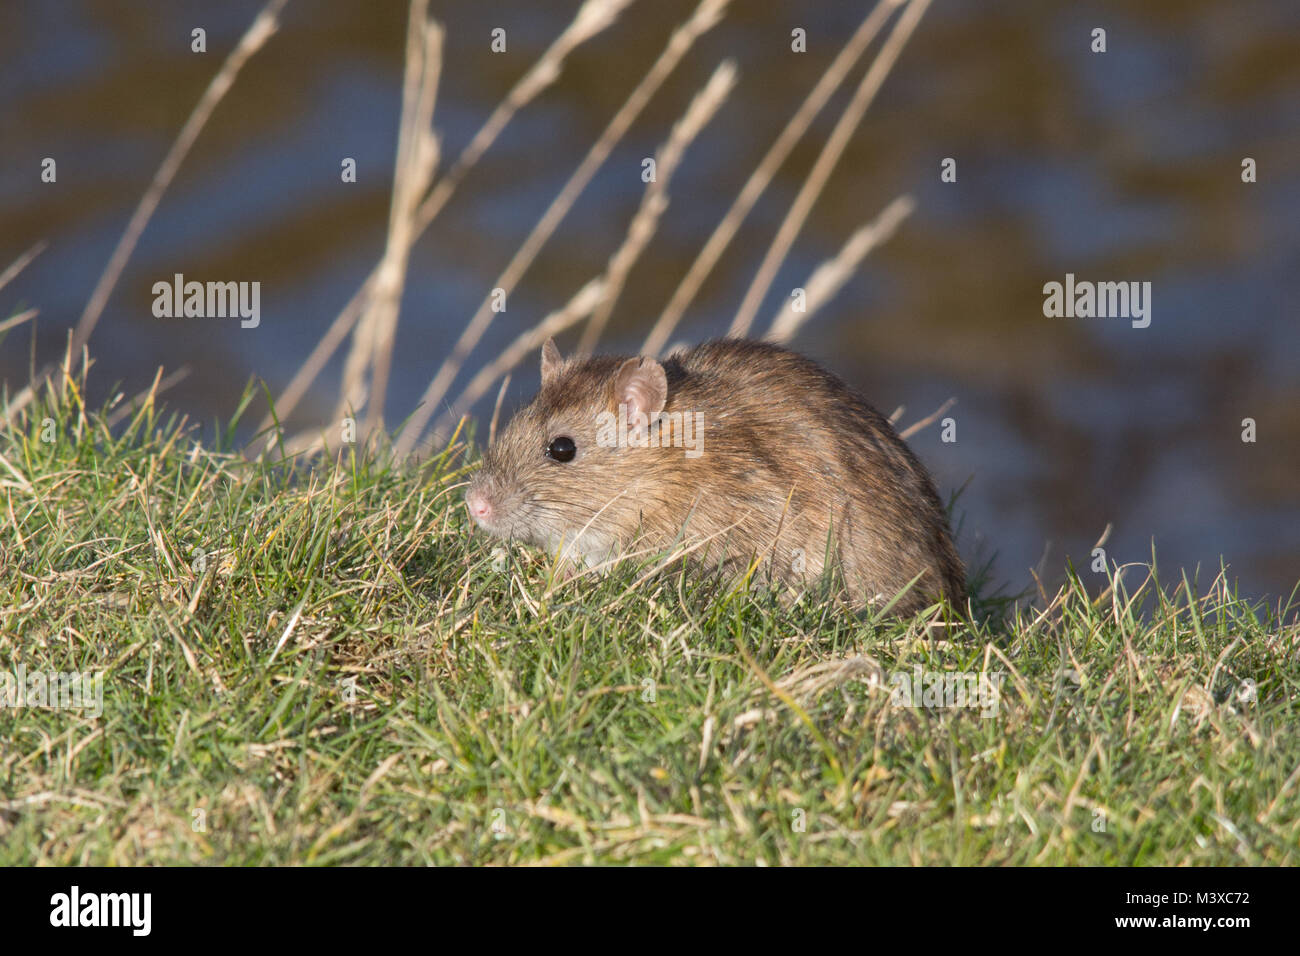 Rata marrón (Rattus norvegicus) alimentándose en la hierba en un día soleado de invierno, Reino Unido. Fauna, mamíferos. Foto de stock